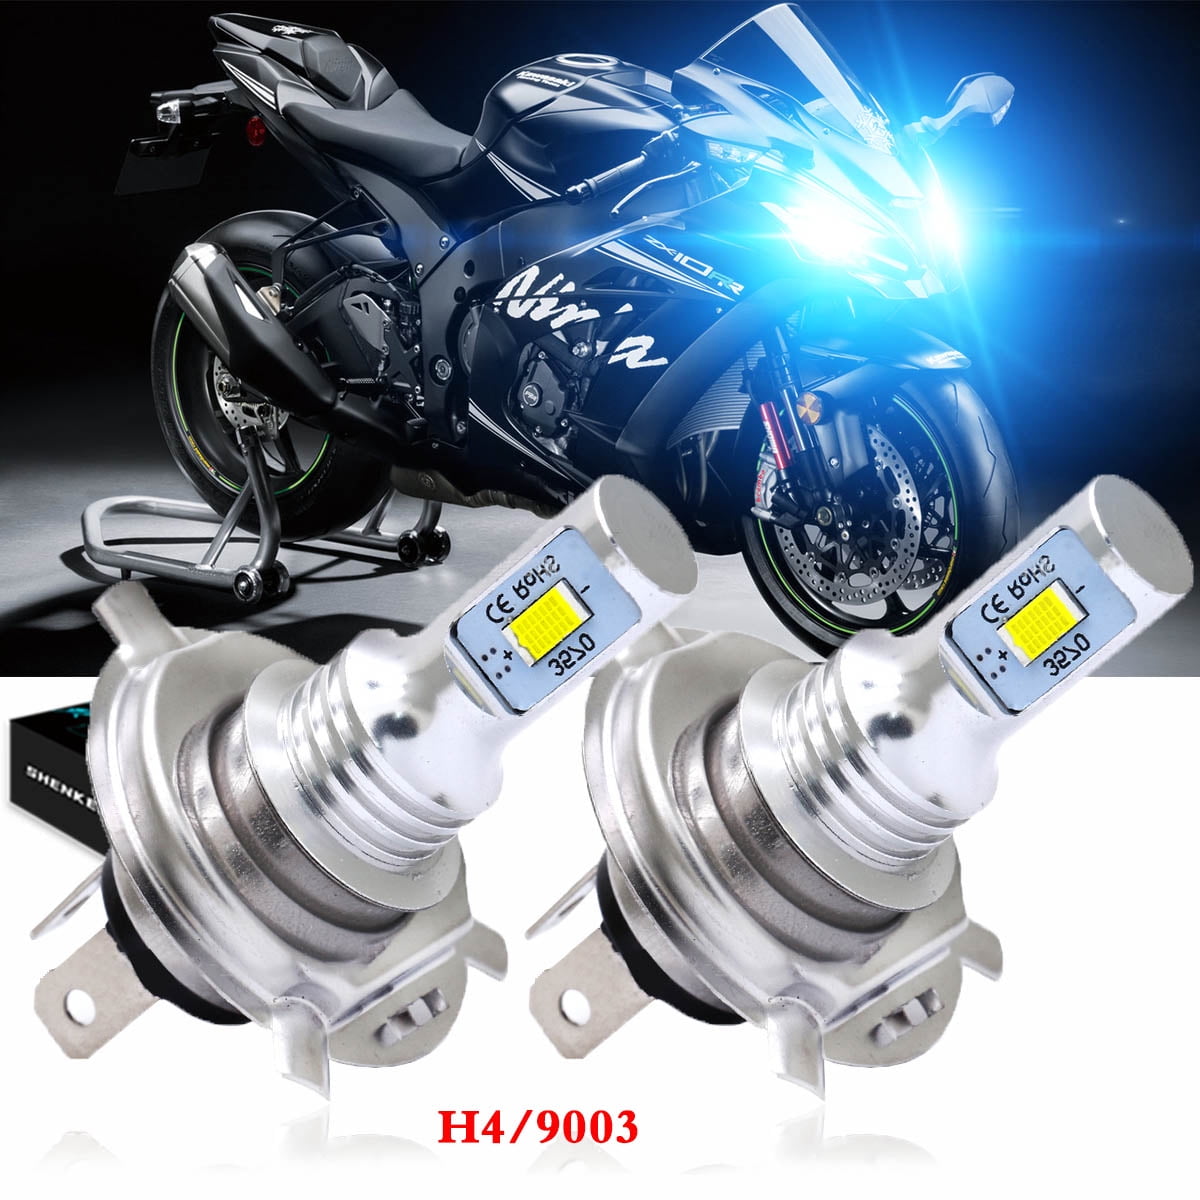 8000K H4 Headlights Motorcycle for Kawasaki Ninja ZX-6R ZX-7R ZX-9R 1991-03 Walmart.com